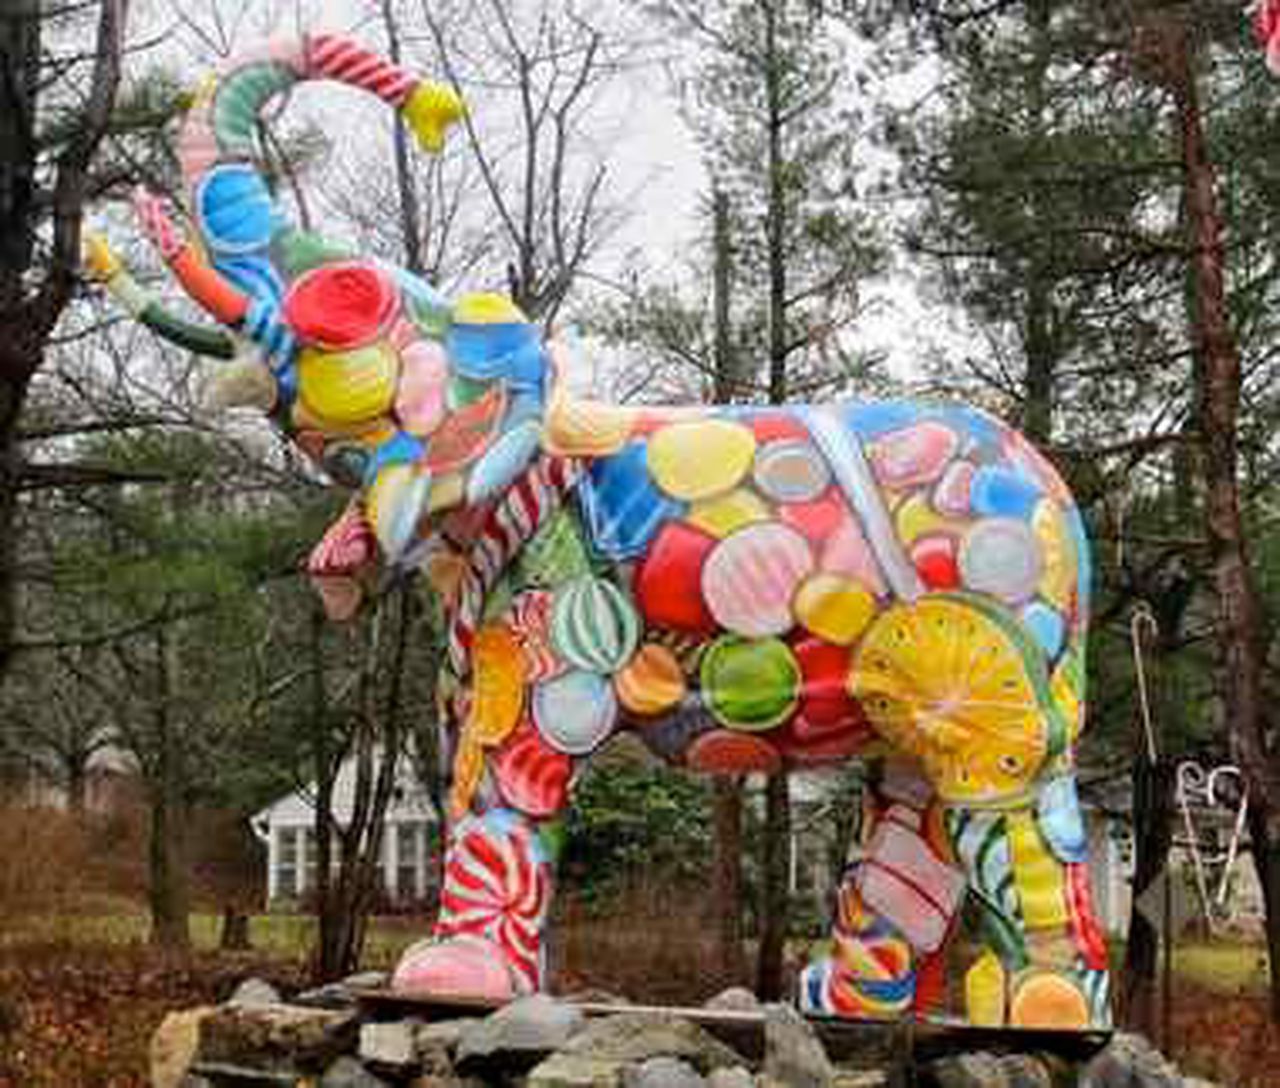 Big League Chew - Original – Mister Ed's Elephant Museum & Candy Emporium